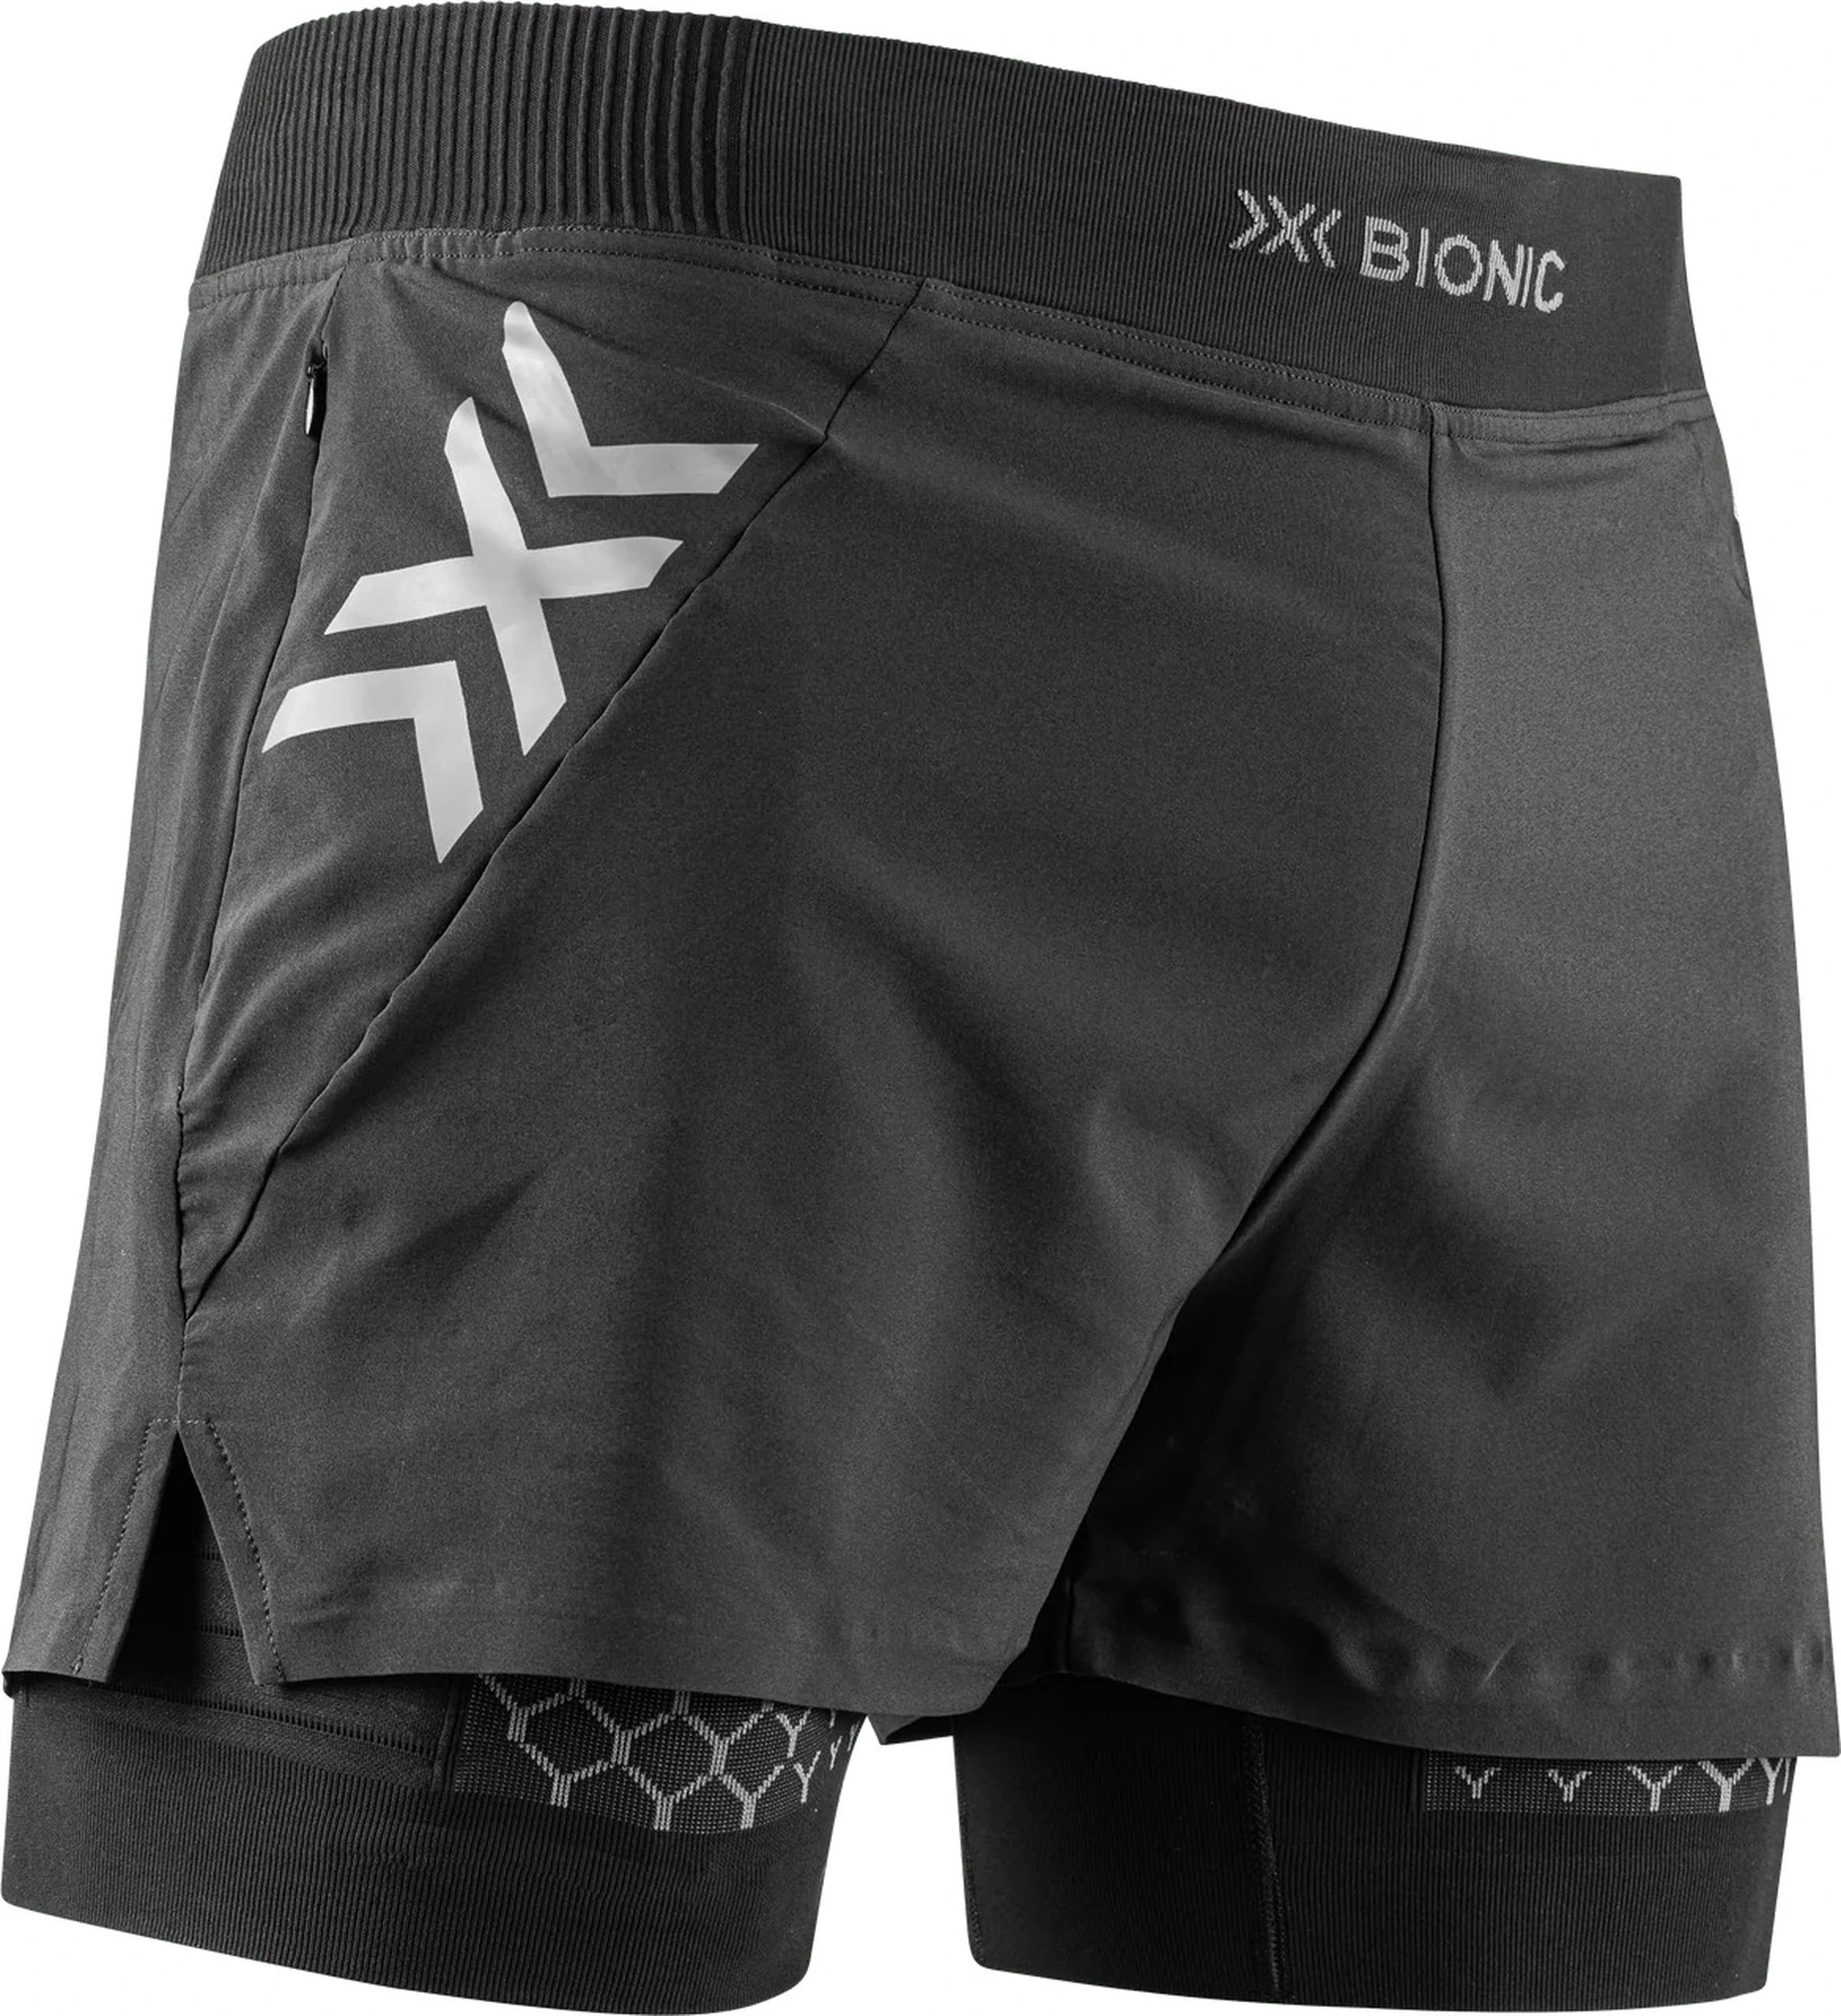 Ausprobiert: X-Bionic Twyce Race 2 in 1 Shorts